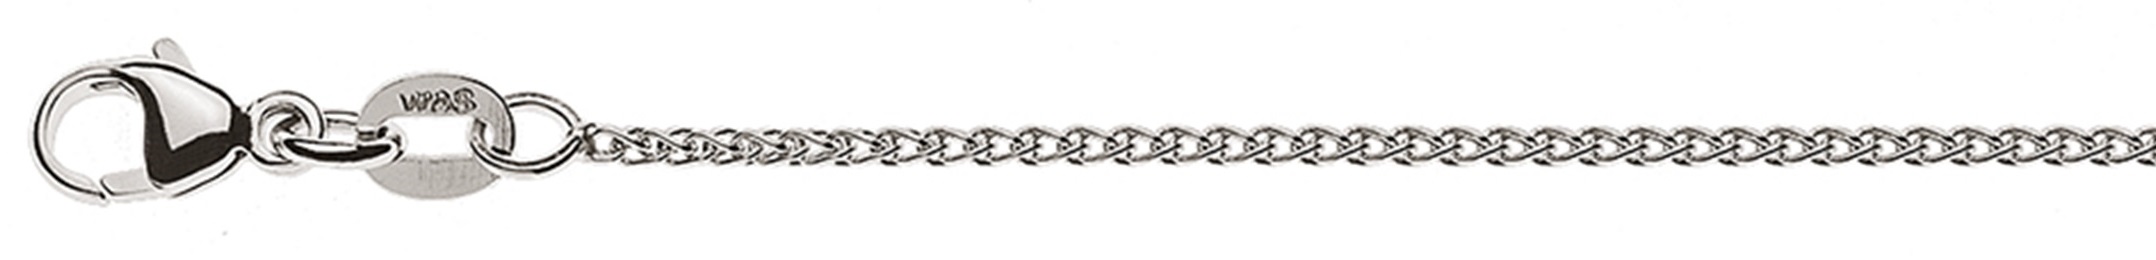 AURONOS Élégance Necklace white gold 14K cable chain 55cm 1.2mm